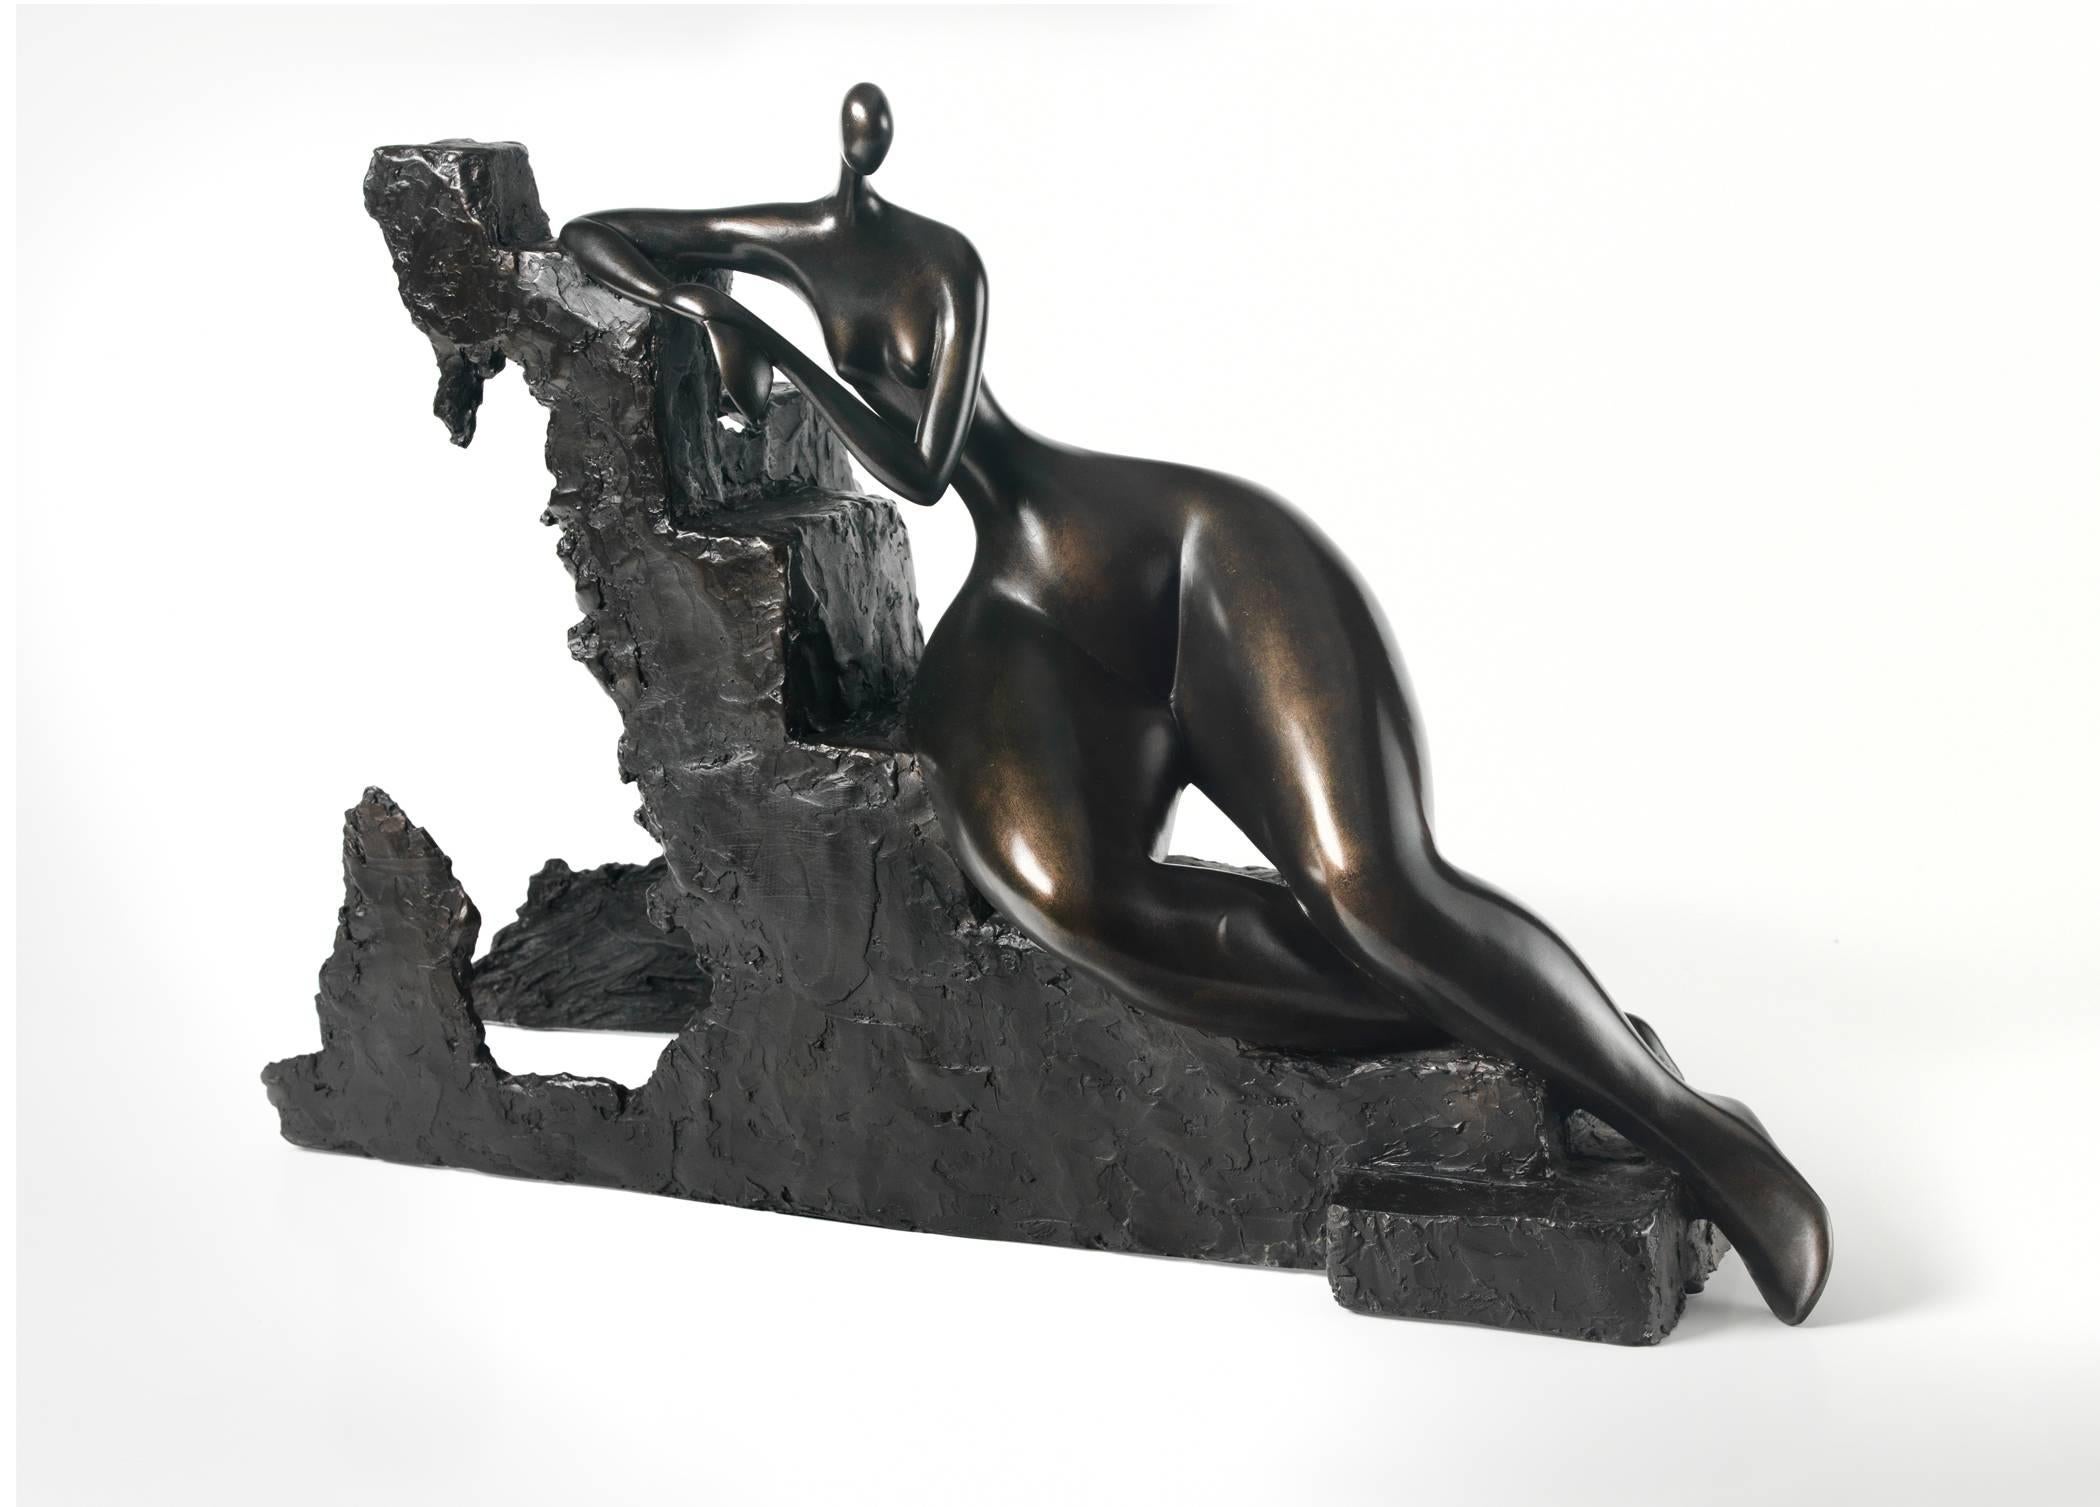 Marie Madeleine Gautier Figurative Sculpture - "C'etait le jour ou le desiquilibre" - Woman, feminine, grace, beauty